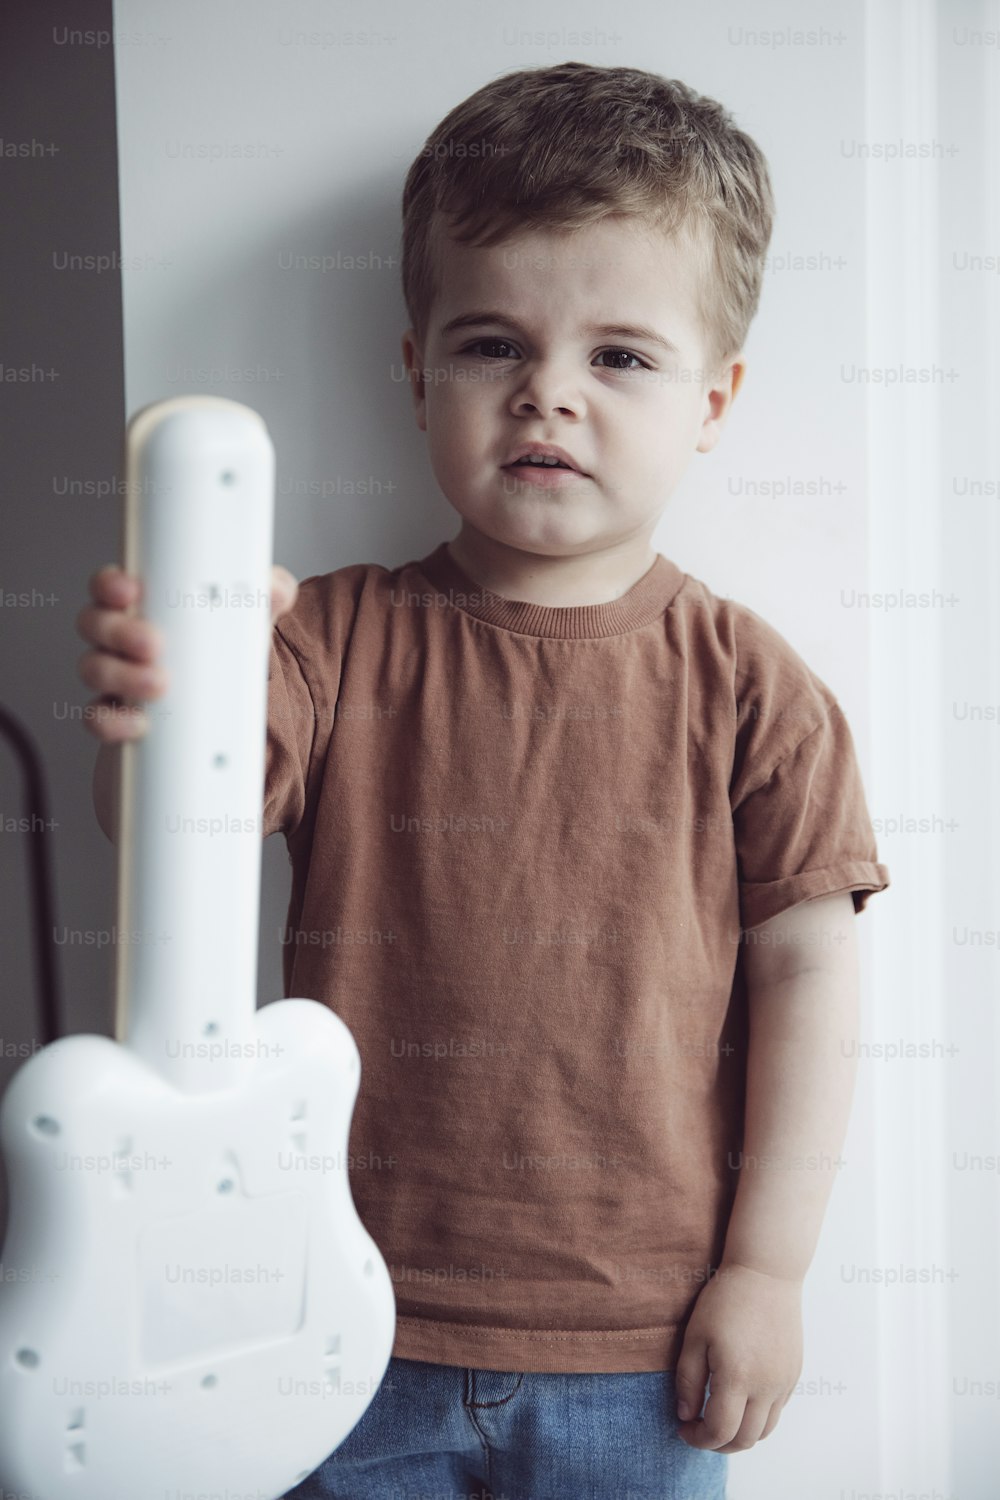 un giovane ragazzo che tiene un oggetto bianco a forma di chitarra